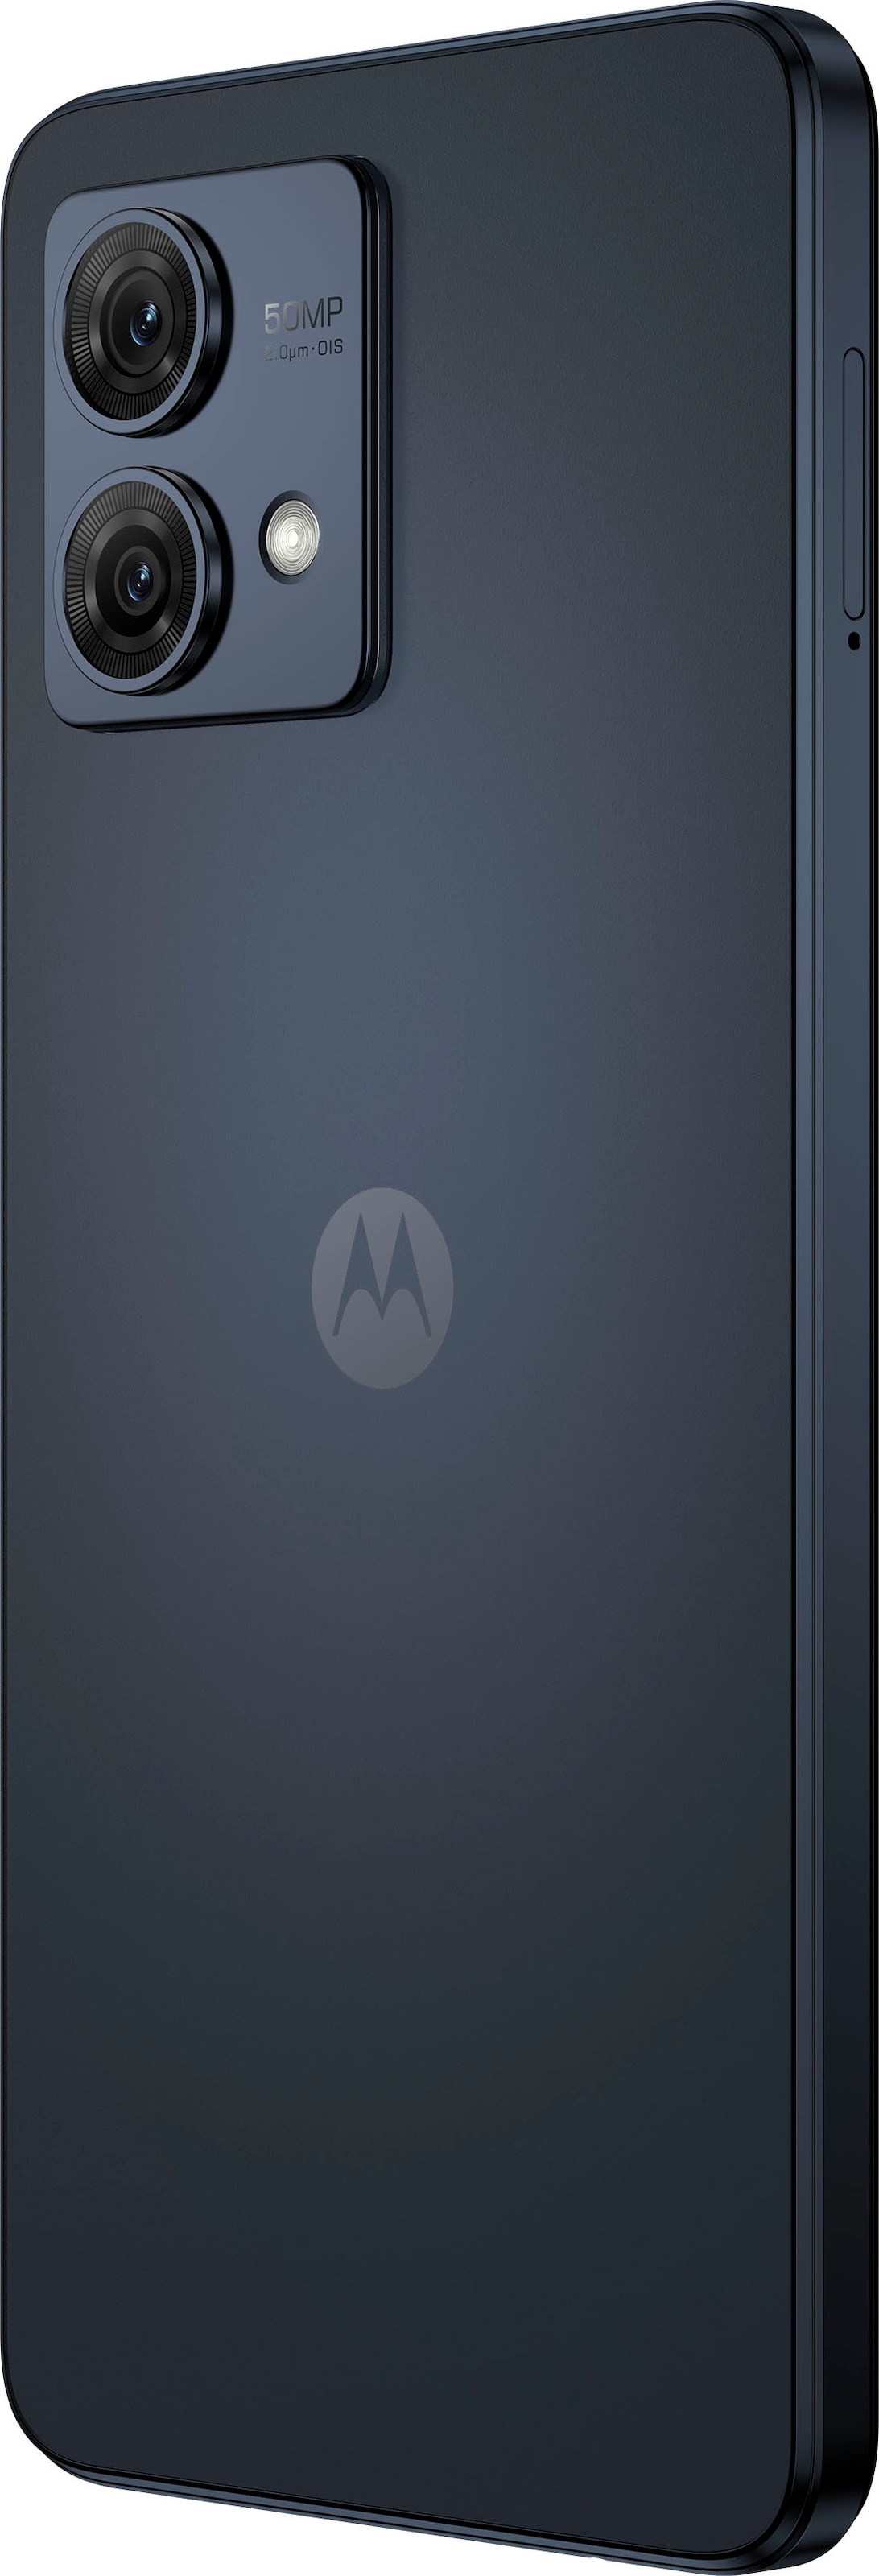 Motorola Smartphone »g84«, Glacier Blau, 16,64 cm/6,55 Zoll, 50 MP Kamera  auf Rechnung kaufen